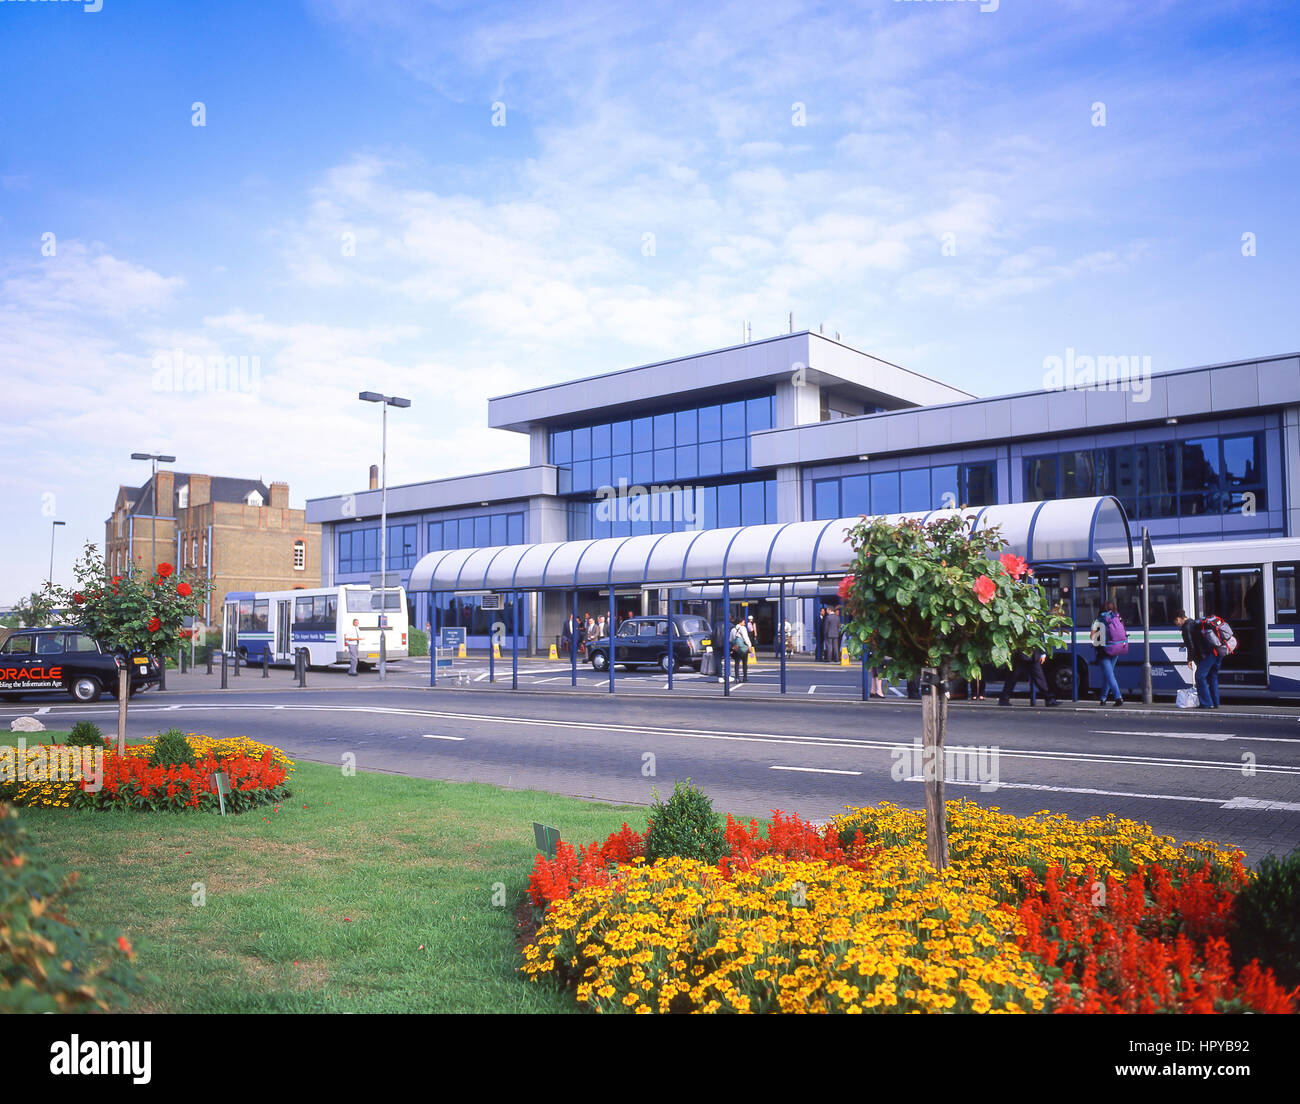 La borne d'entrée de l'aéroport de London City, London, Greater London, Angleterre, Royaume-Uni Banque D'Images